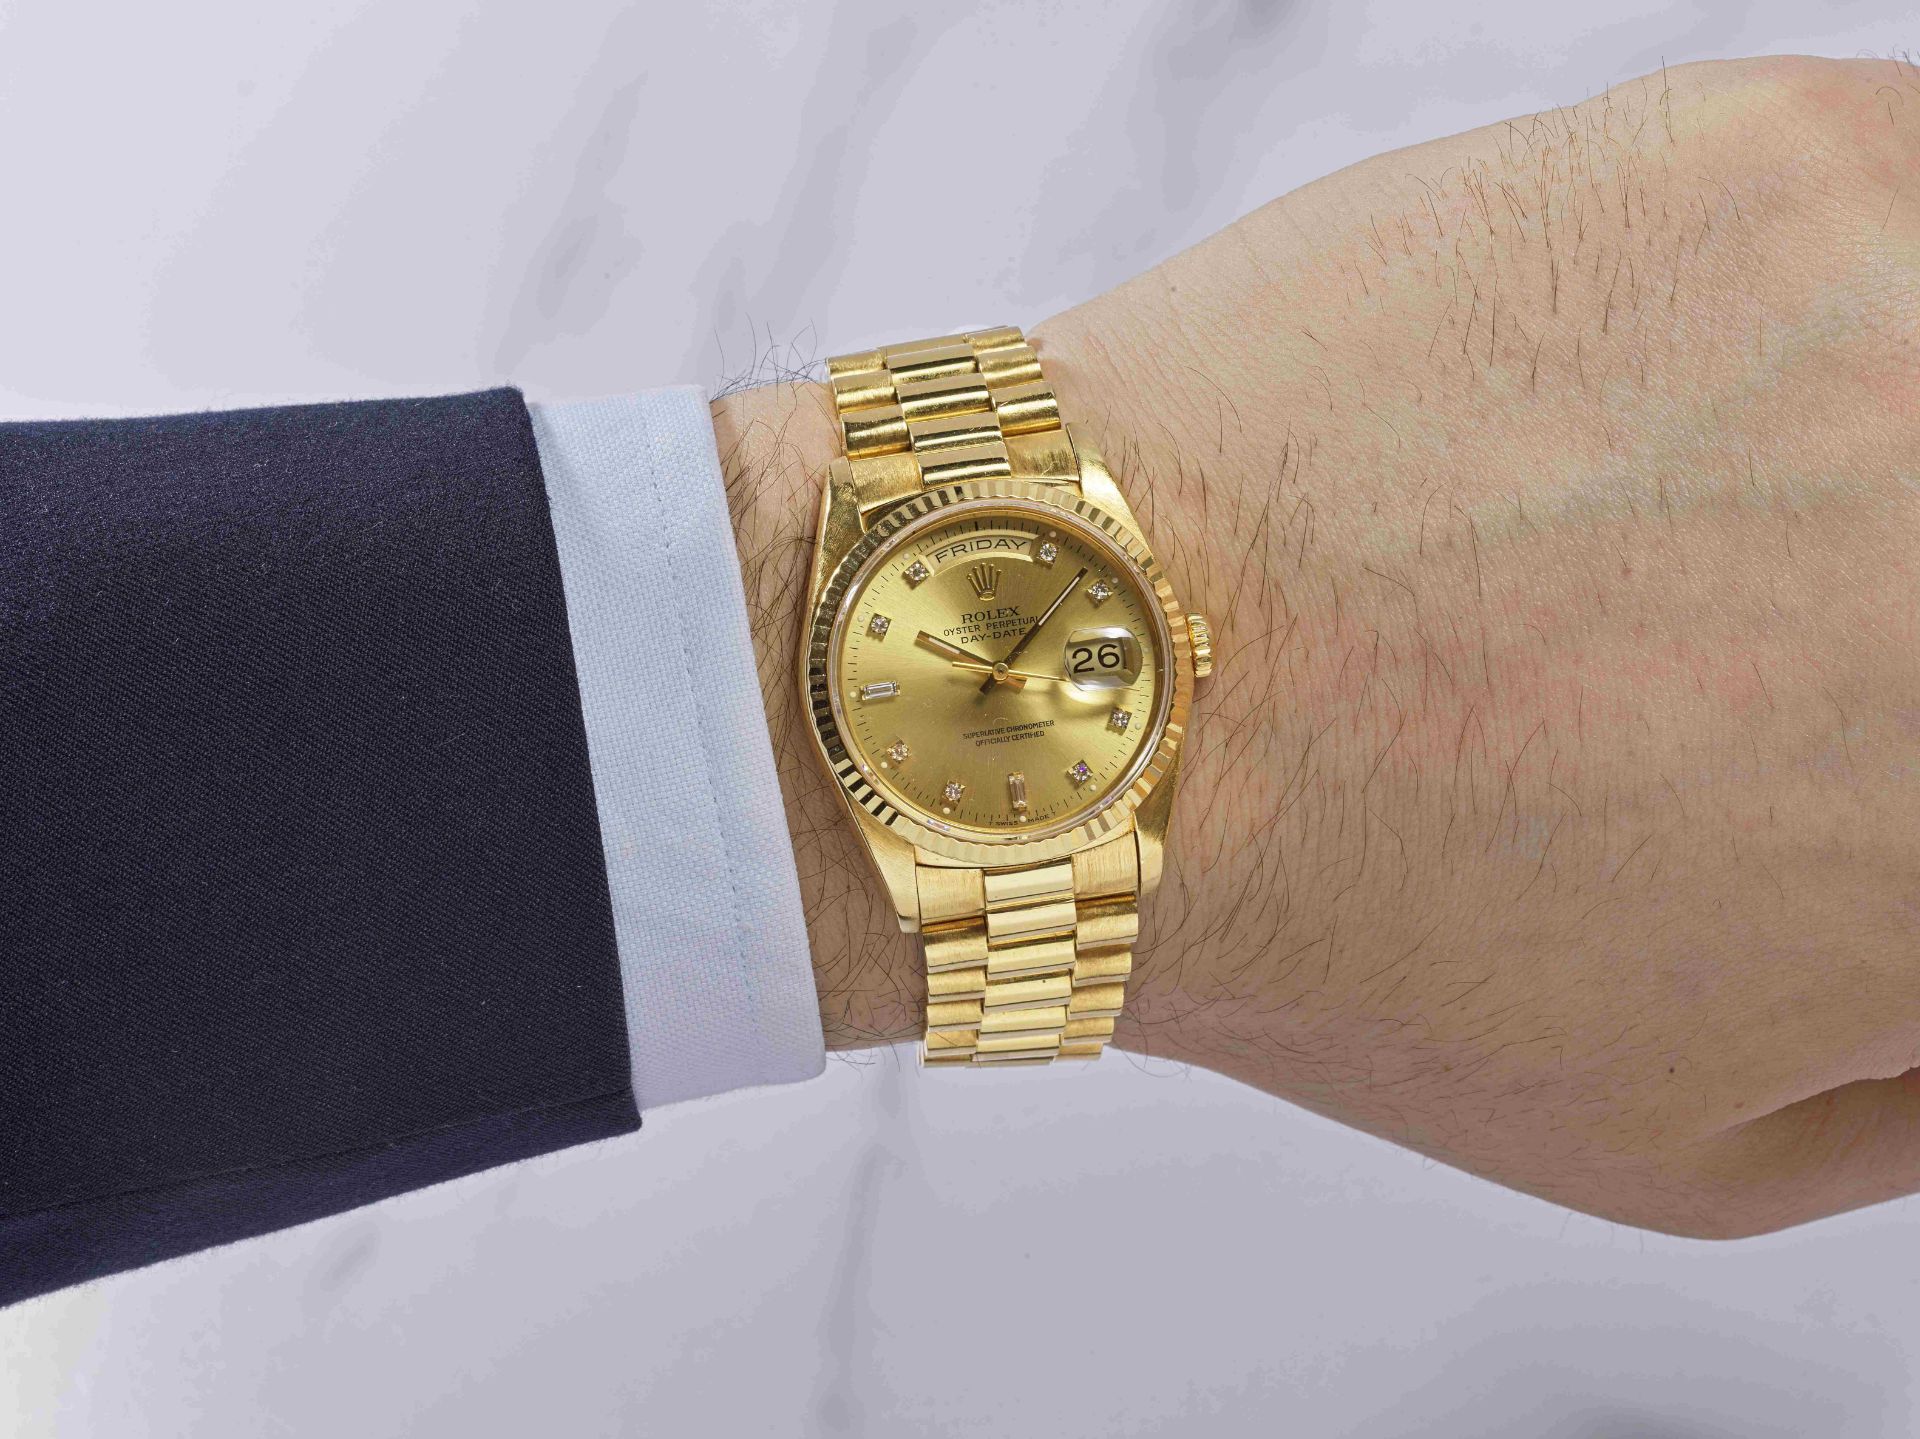 Rolex. Montre bracelet en or jaune 18K (750) sertie de diamants avec jour et date mouvement auto... - Image 3 of 3